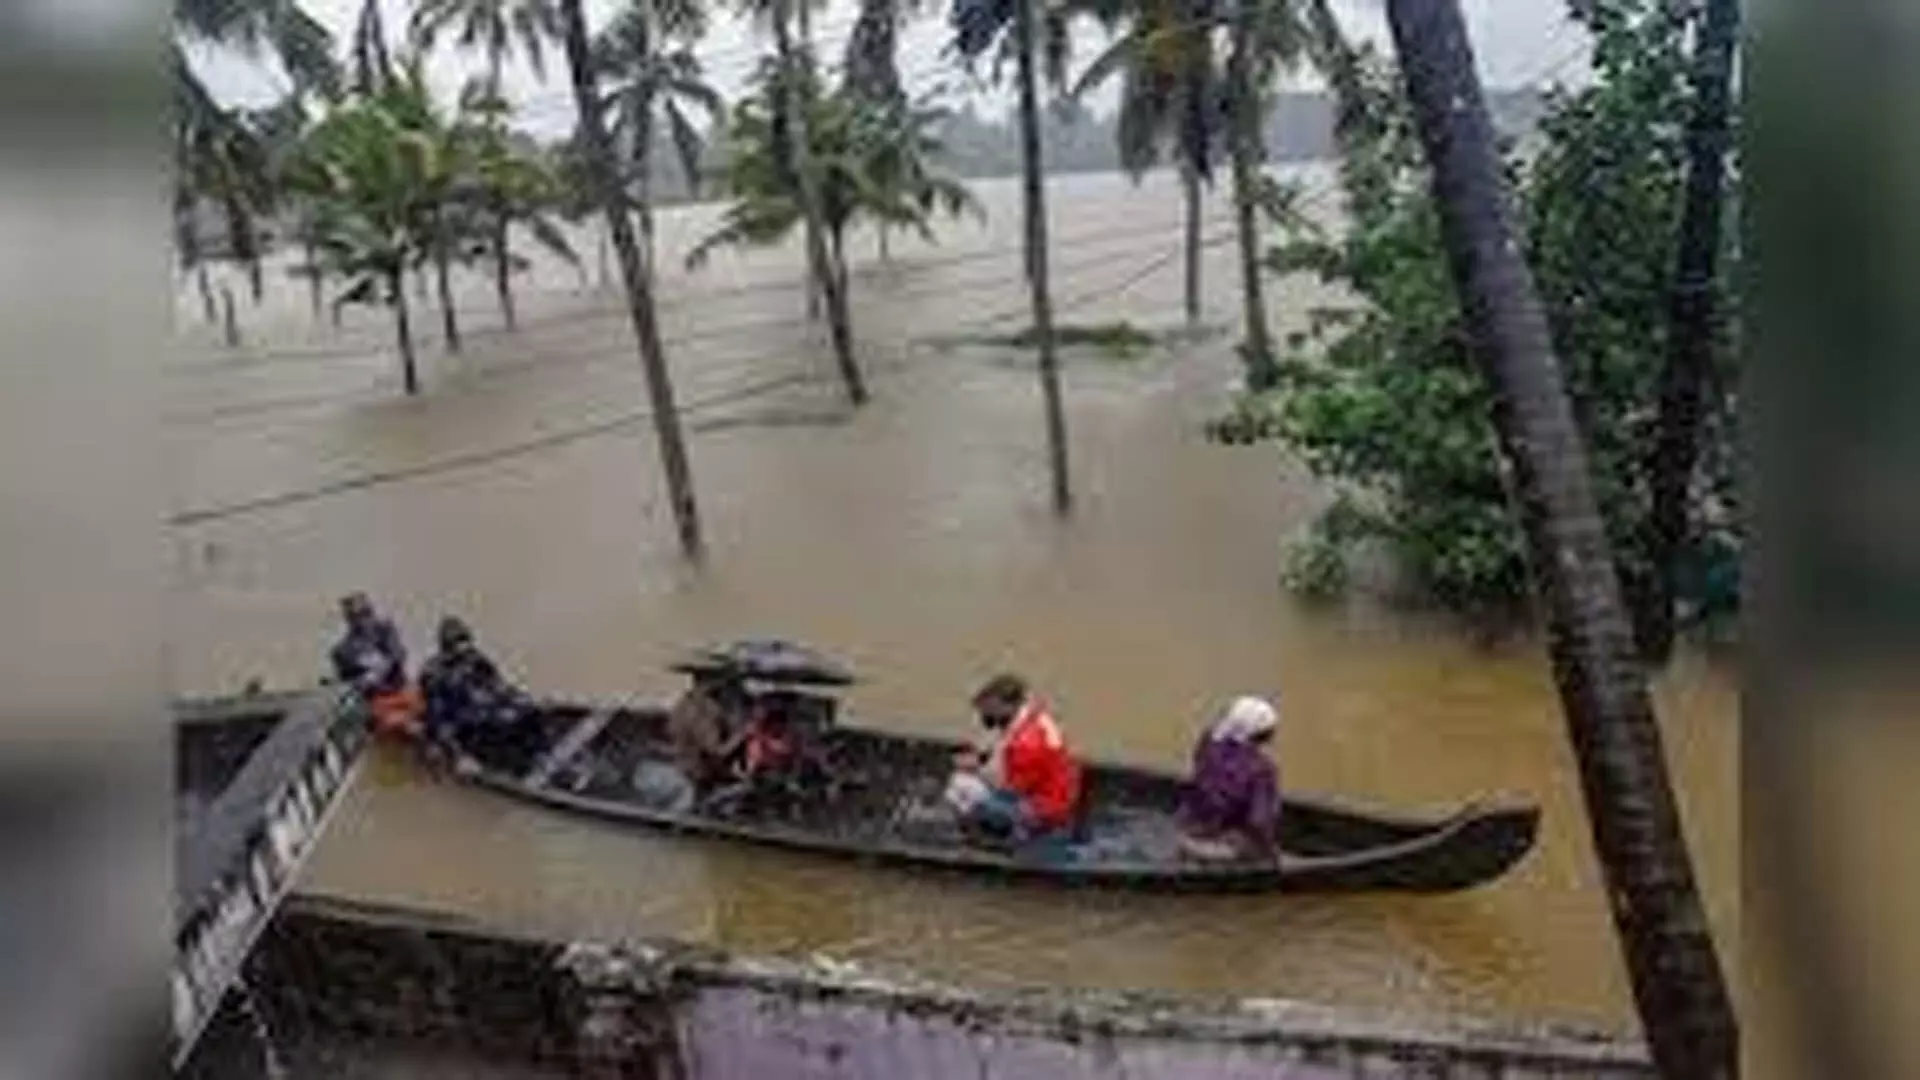 भारी बारिश के कारण केरल के कई जिलों में चेतावनी दी यात्रा प्रतिबंध लगाया